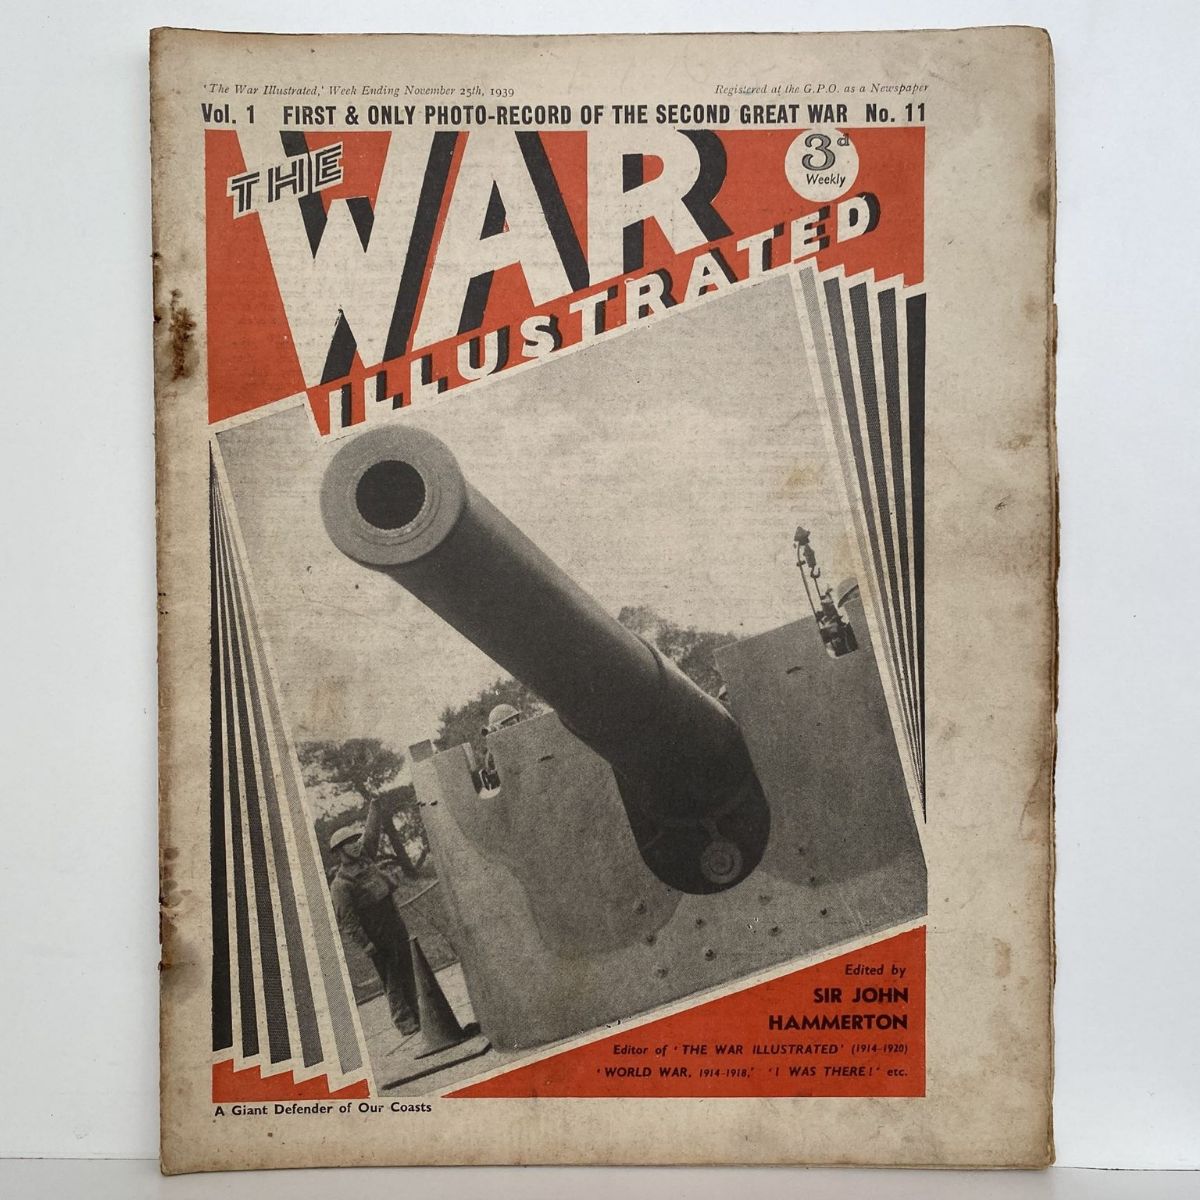 THE WAR ILLUSTRATED - Vol 1, No 11, 25th Nov 1939